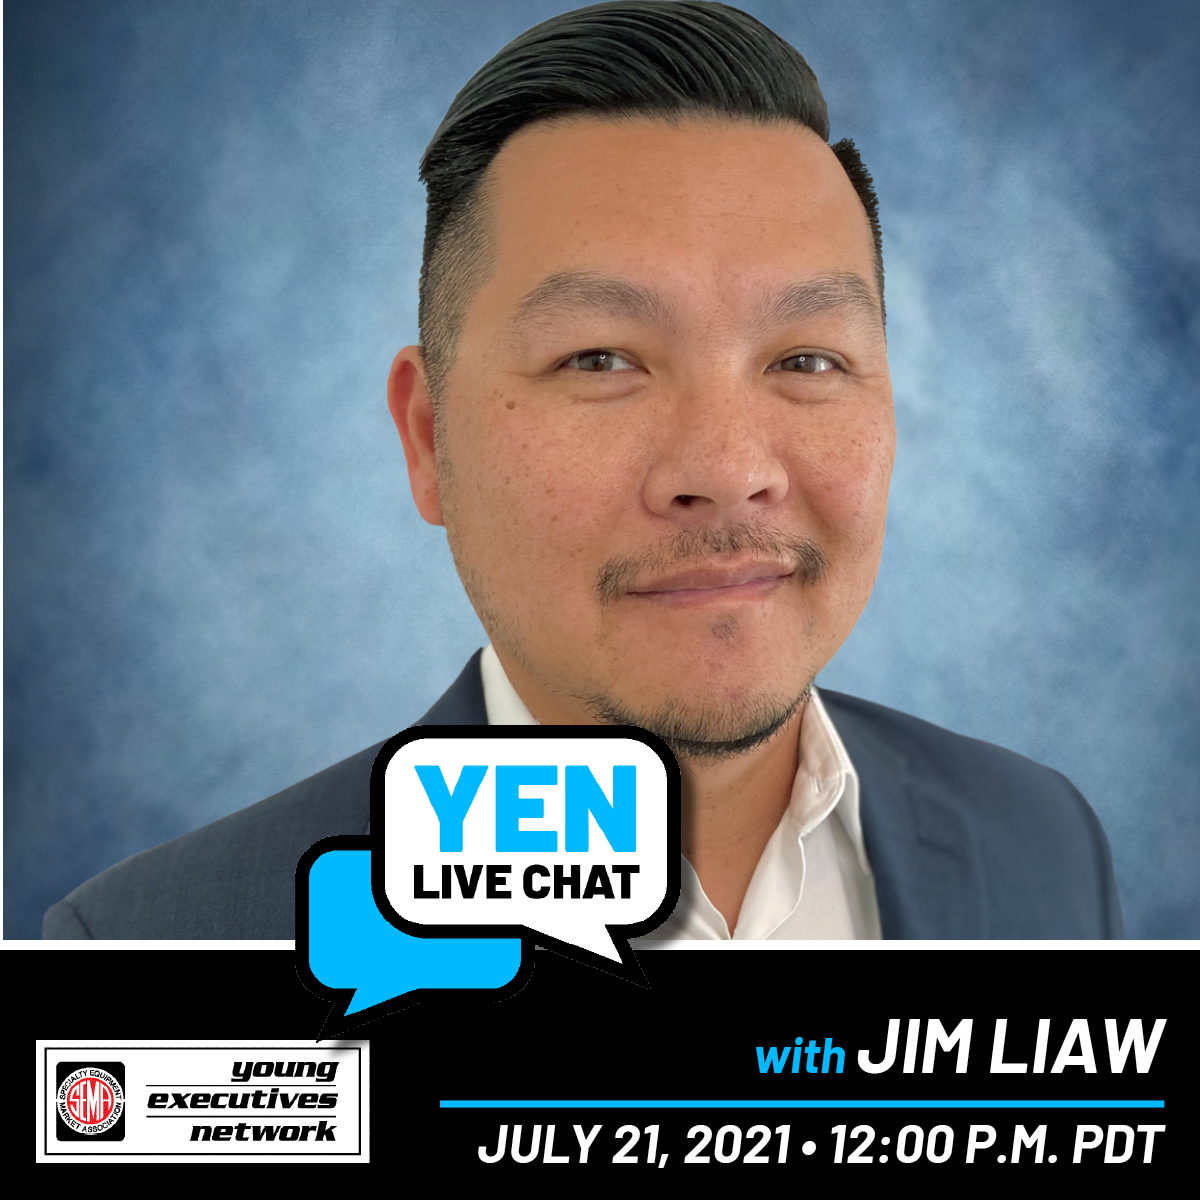 YEN Live Chat - Jim Liaw